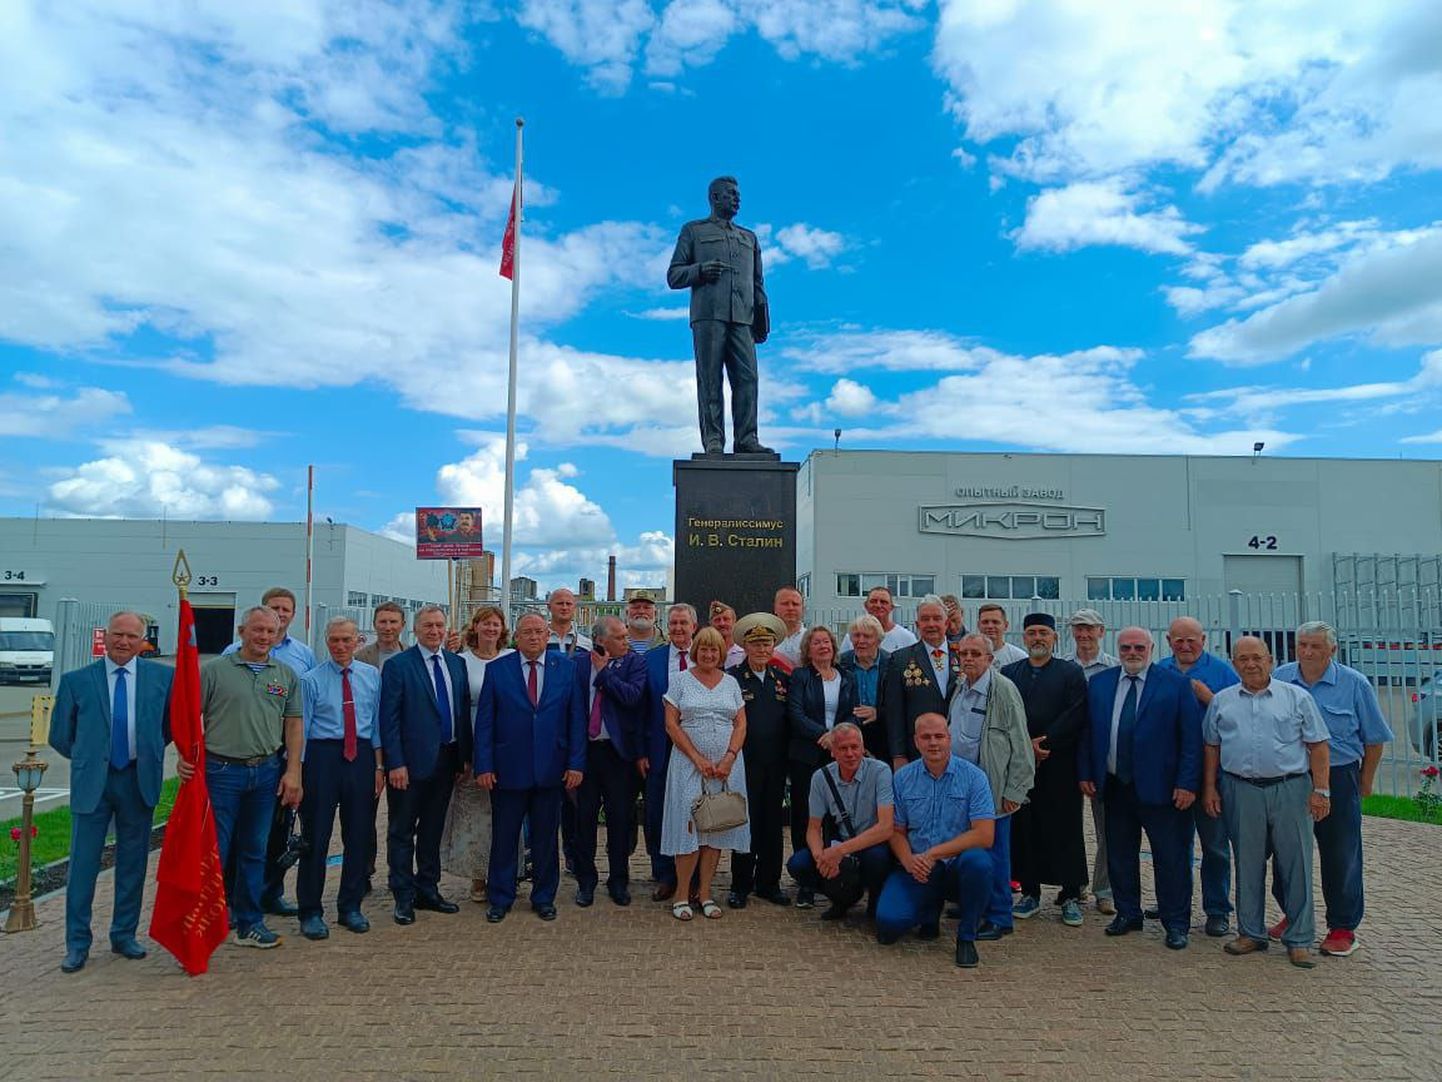 Velikie Lukis avati 15. augustil tehase õuel Stalini monument.